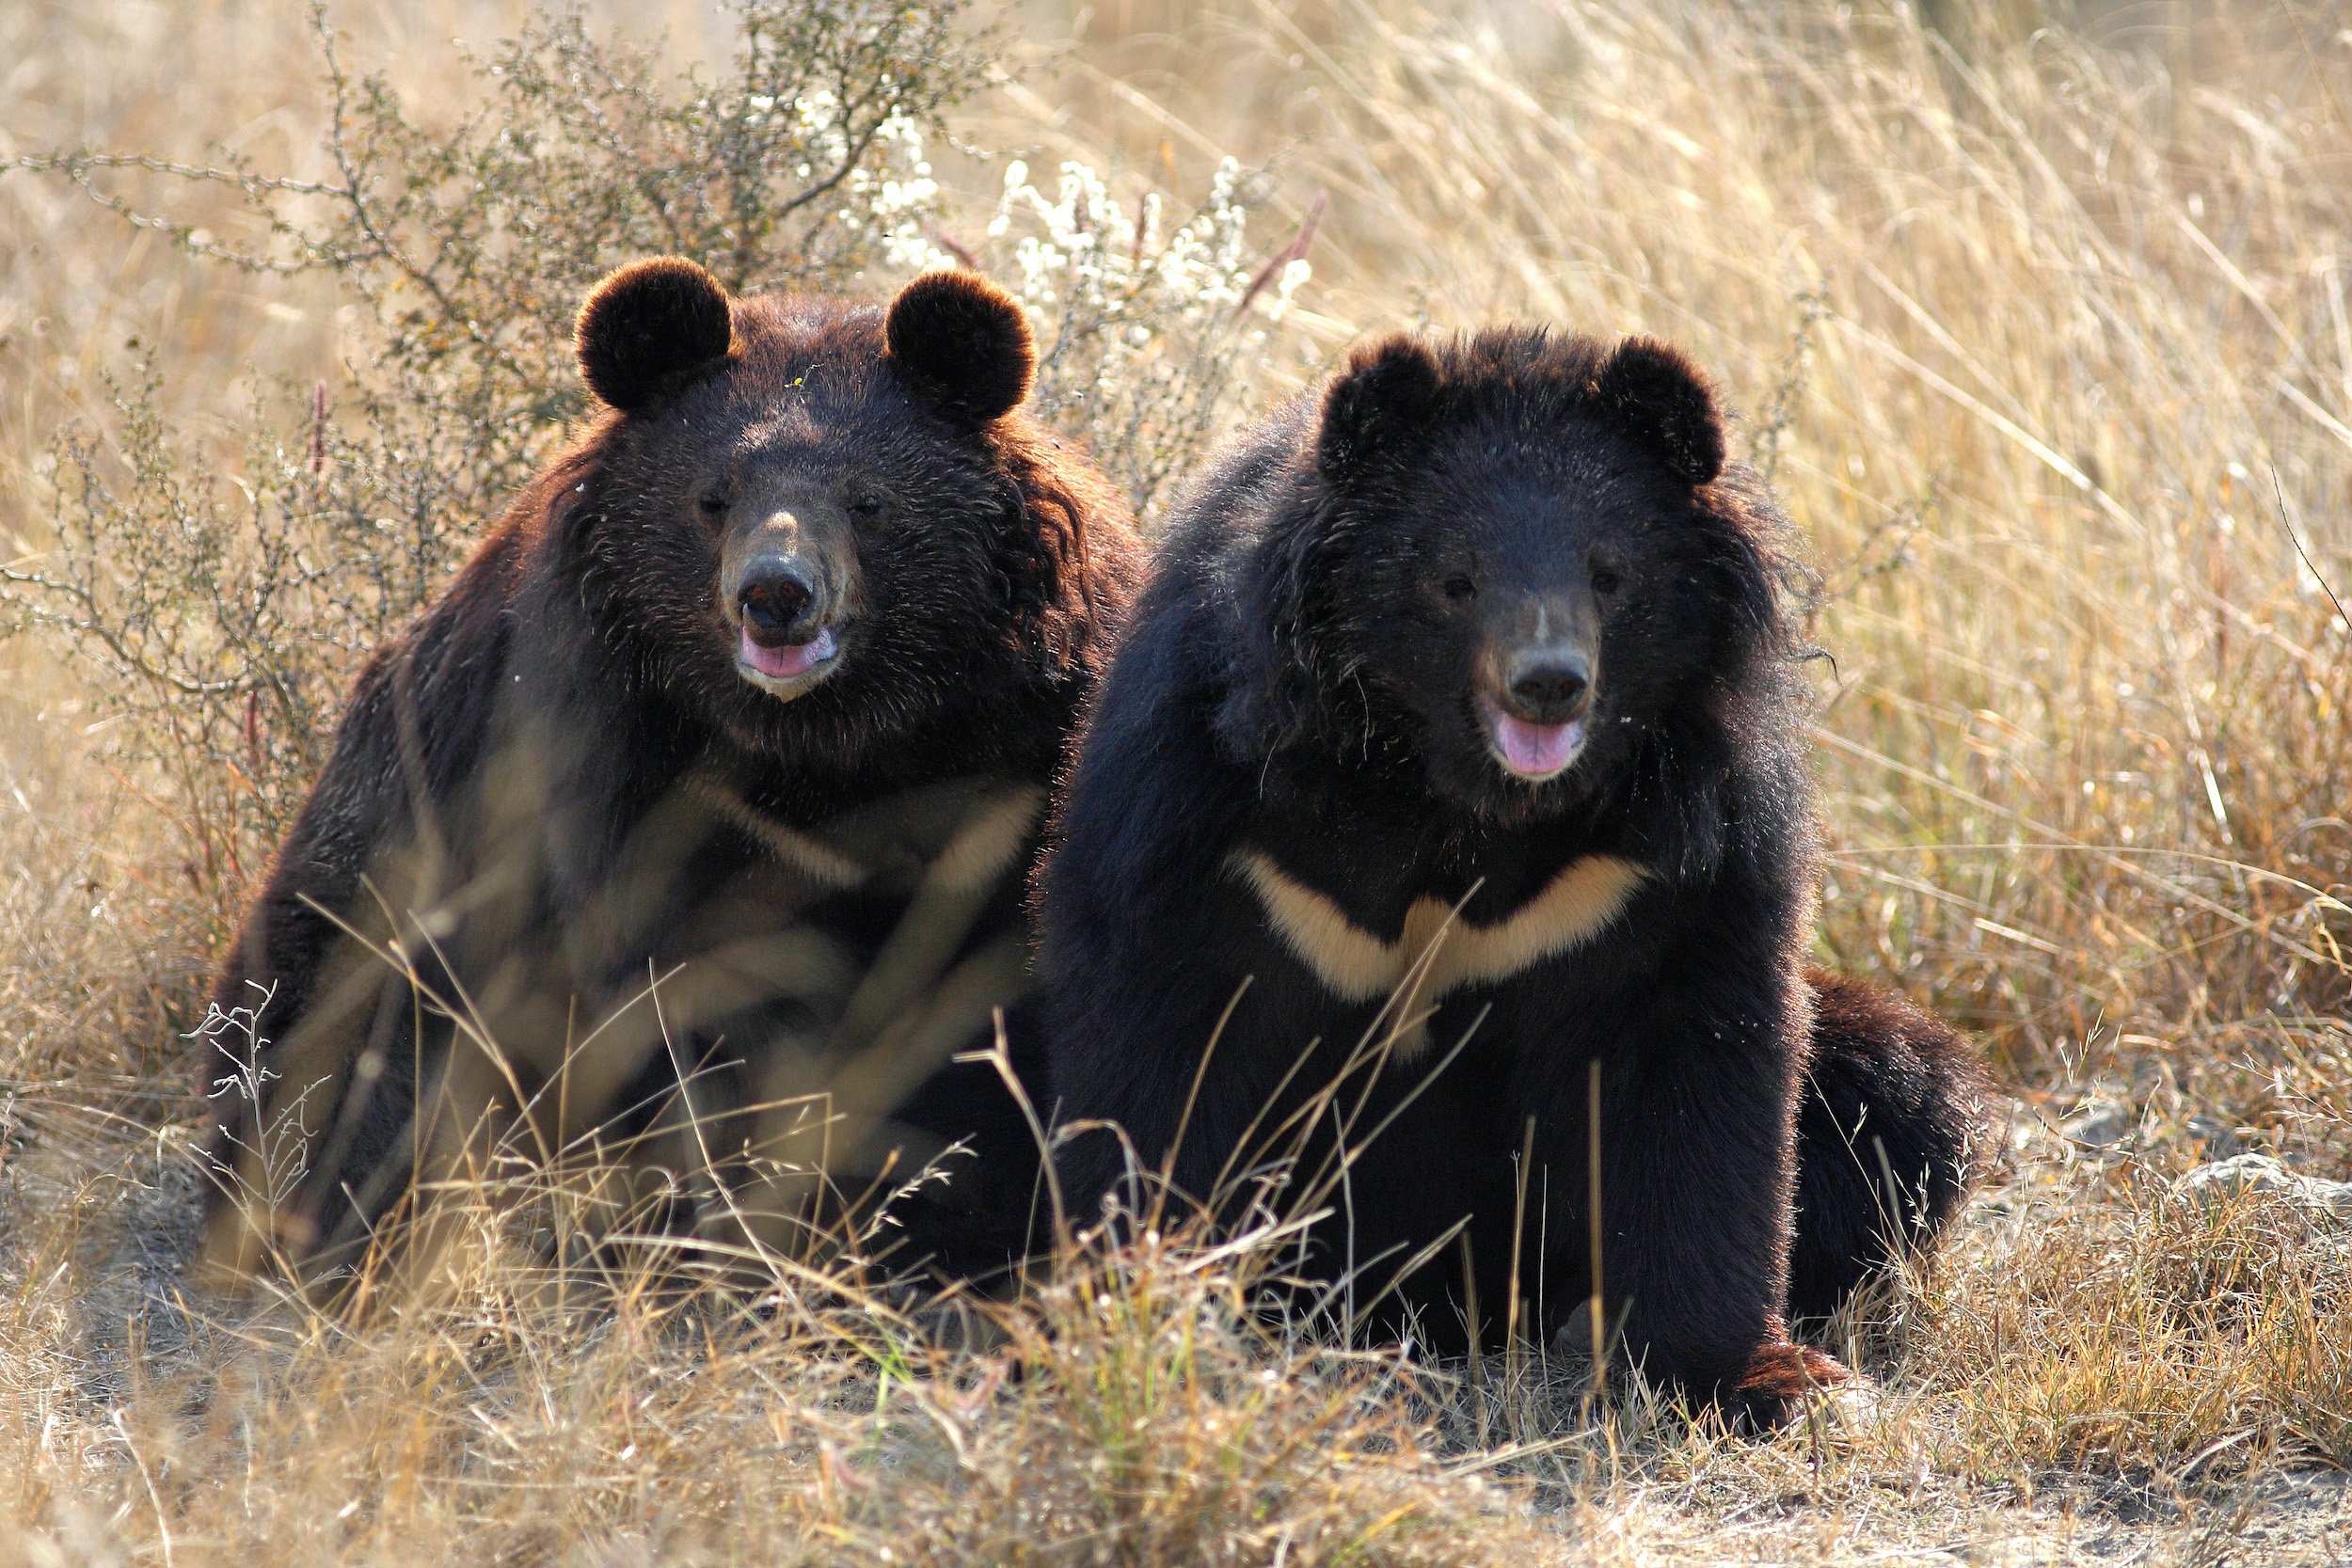 Balkasar Bear Sanctuary, Fakhar-i-Abbas